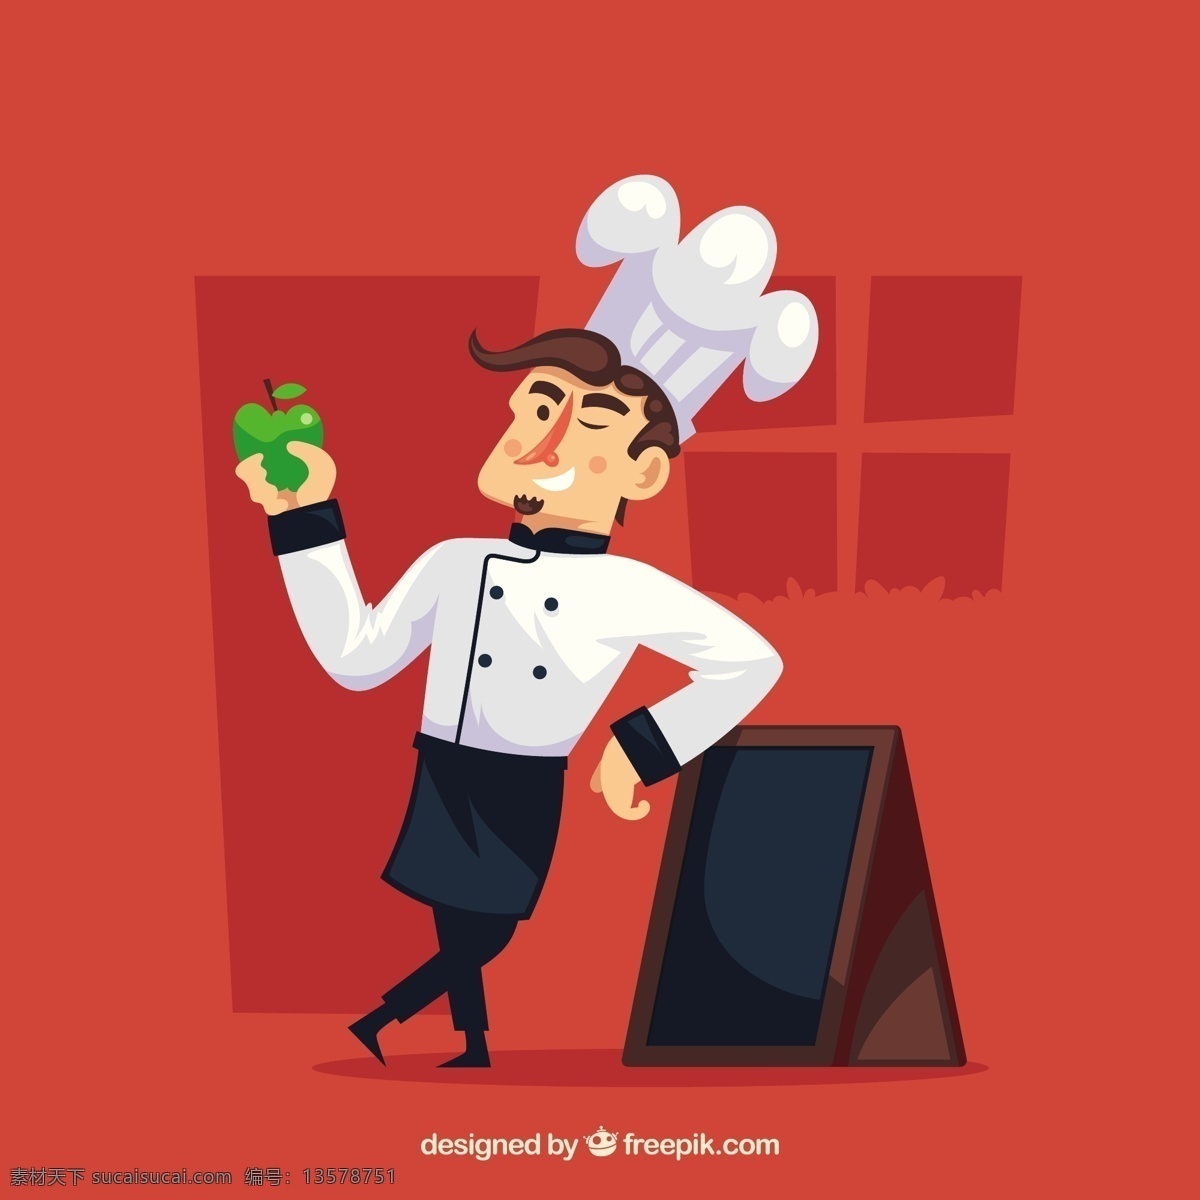 苹果 靠着 黑板 厨师 人物 插图 红色 背景 拿着苹果 靠着黑板的 厨师人物插图 红色背景 淘宝渐变背景 矢量图素材 网页素材 矢量图模板 插画素材 卡通素材 唯美背景 唯美图片